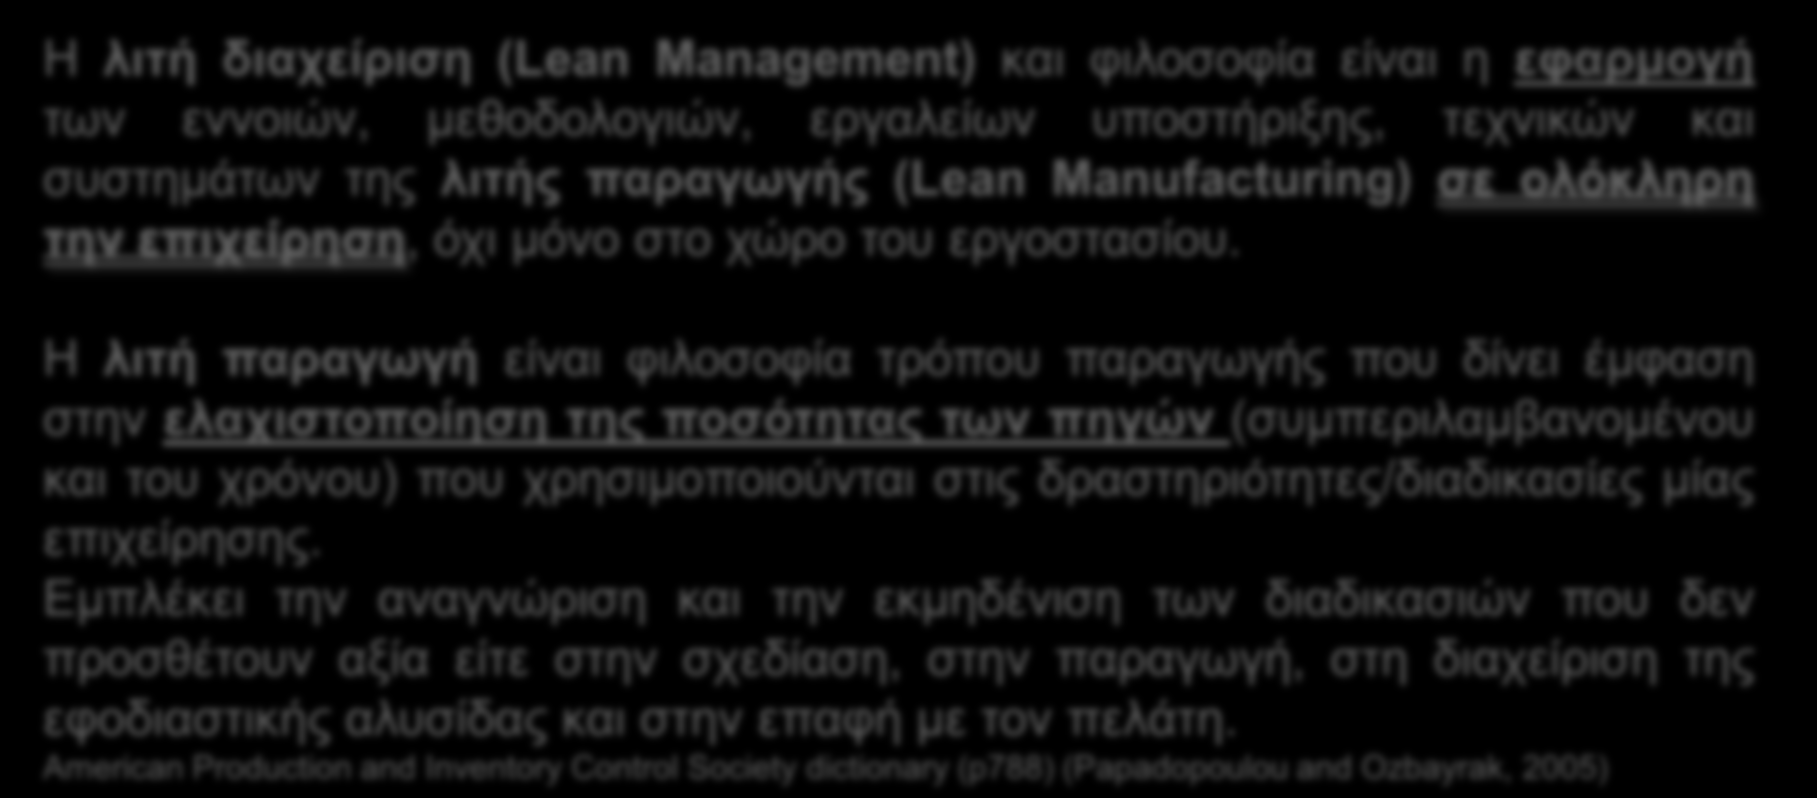 3. Συστήματα Διοίκησης & Βελτίωσης (Management Systems) 1 Ορισμός Γενικά Στοιχεία Lean Management Τι είναι ; Η λιτή διαχείριση (Lean Management) και φιλοσοφία είναι η εφαρμογή των εννοιών,